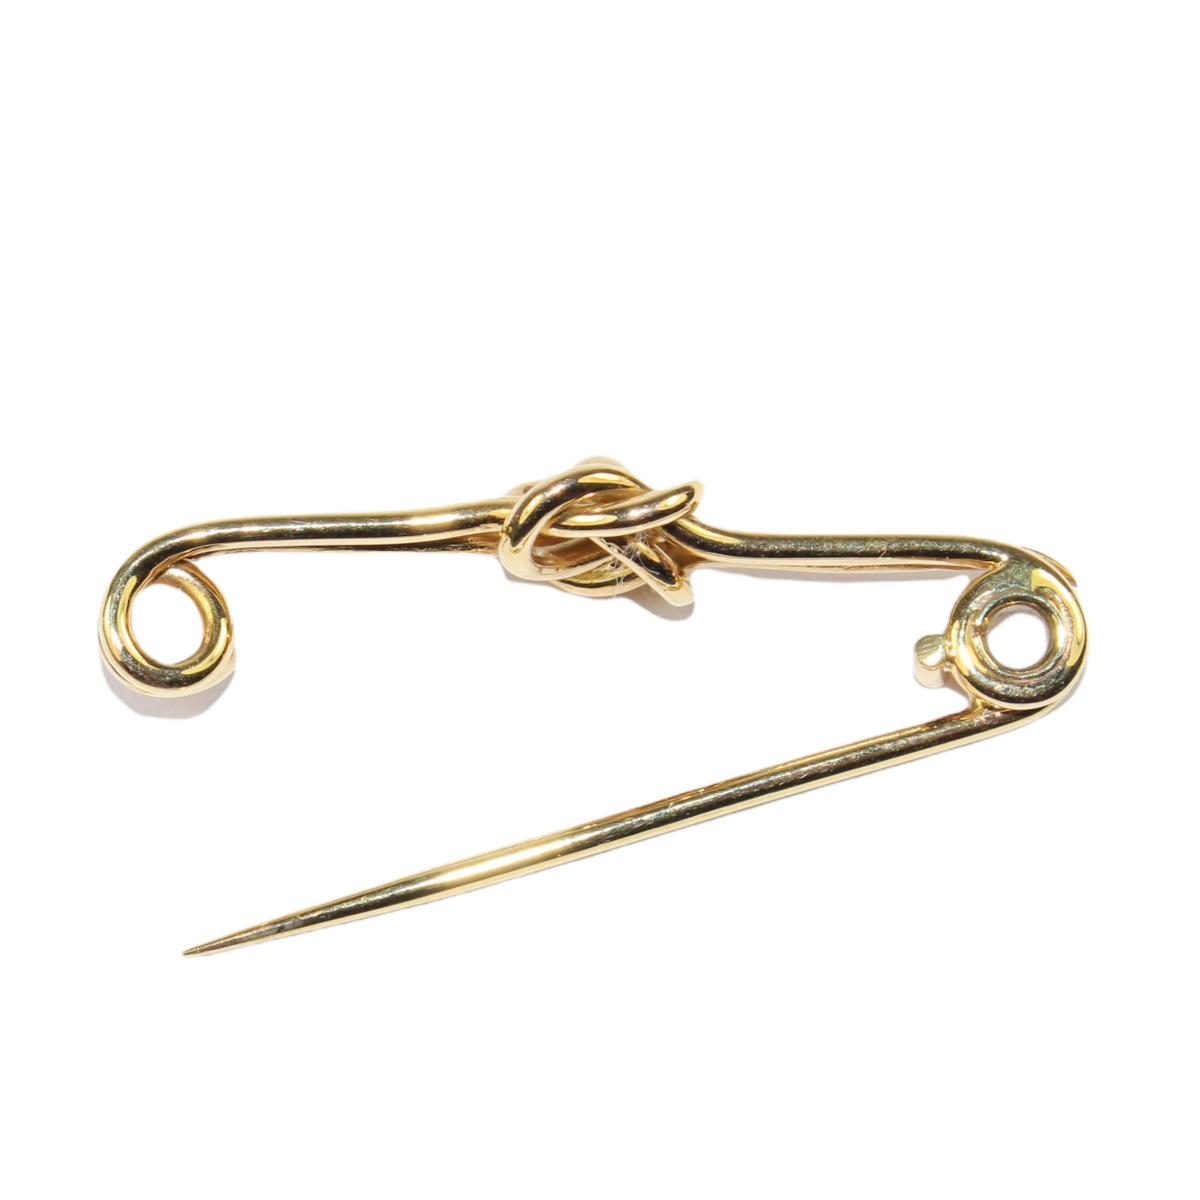 Edwardian Gold Knot Stock Pin circa 1905